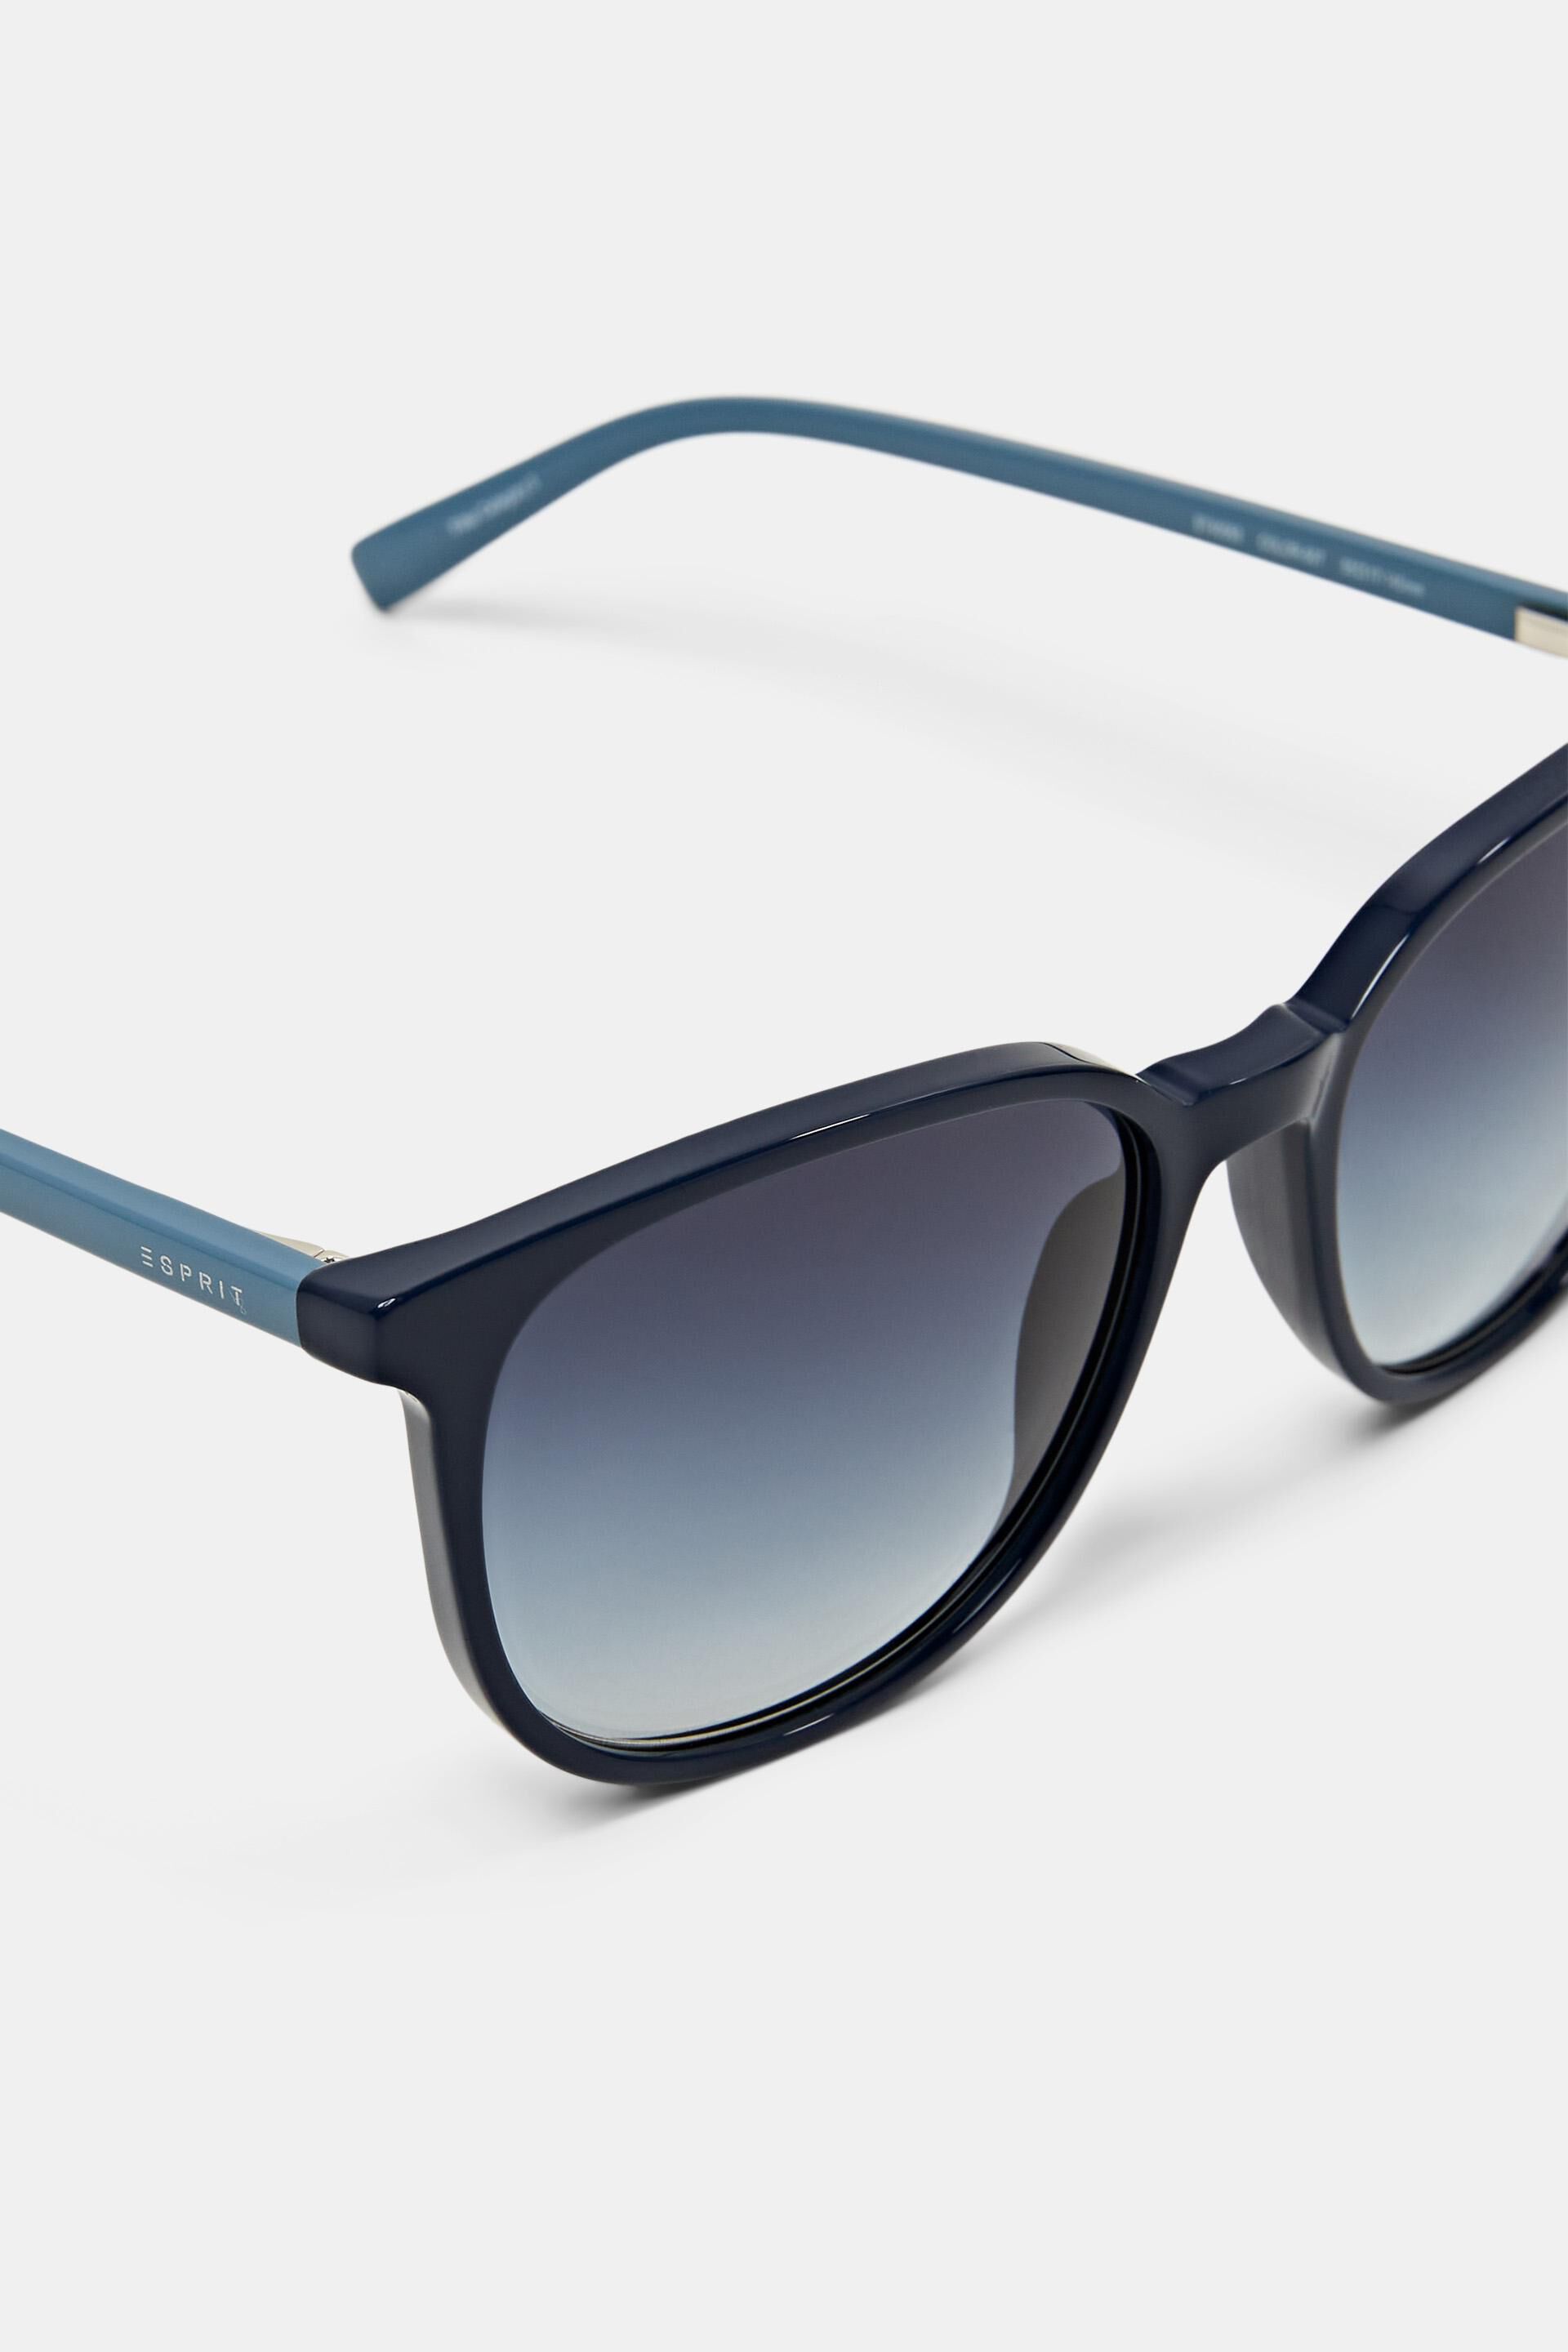 Esprit frame Colour sunglasses